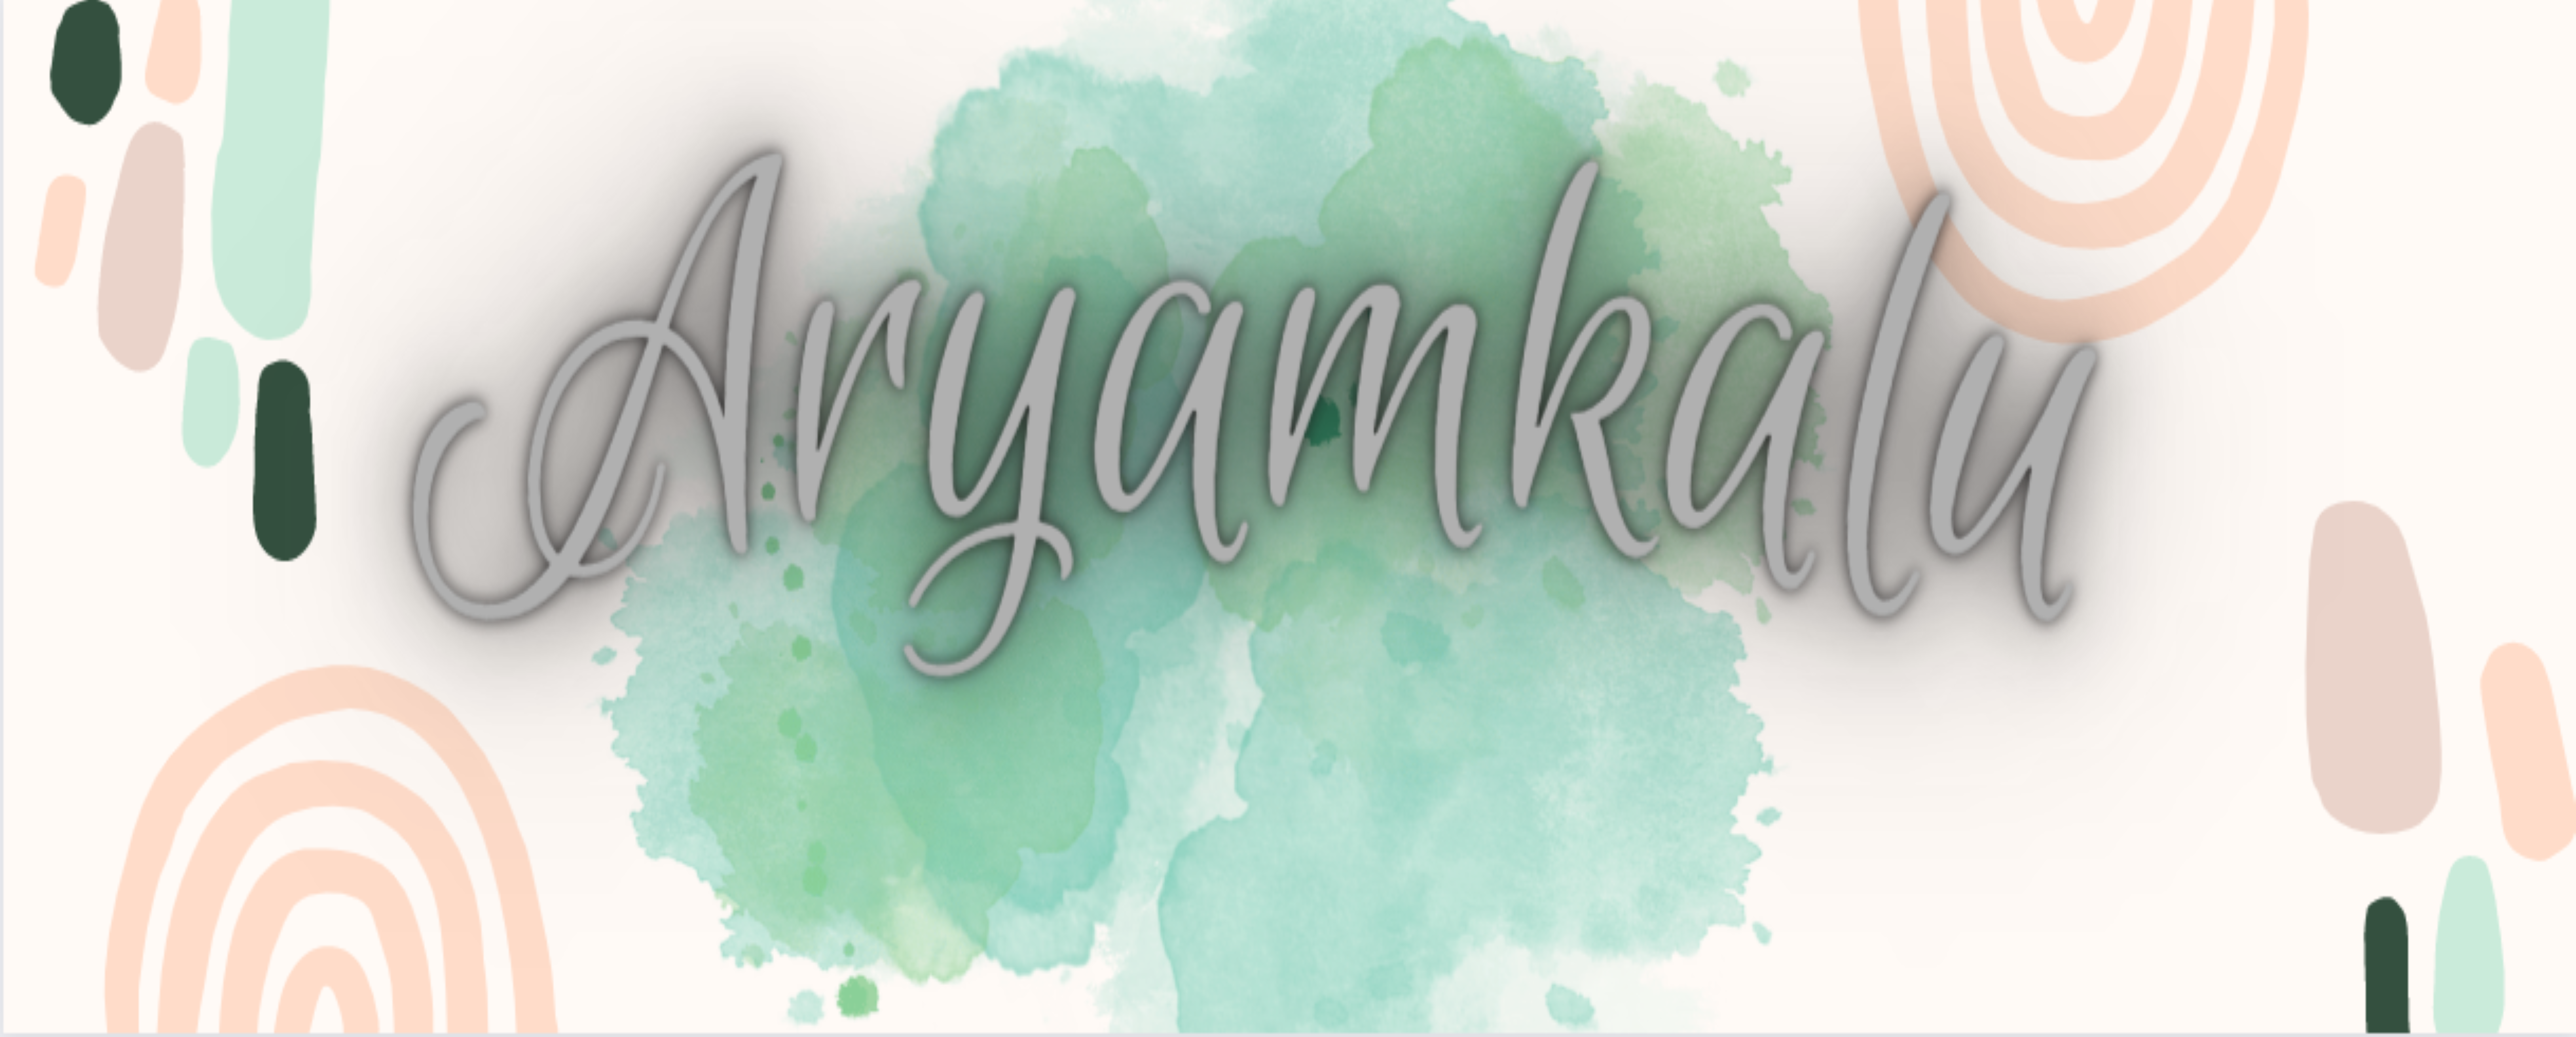 aryamkalu my profile image: 1